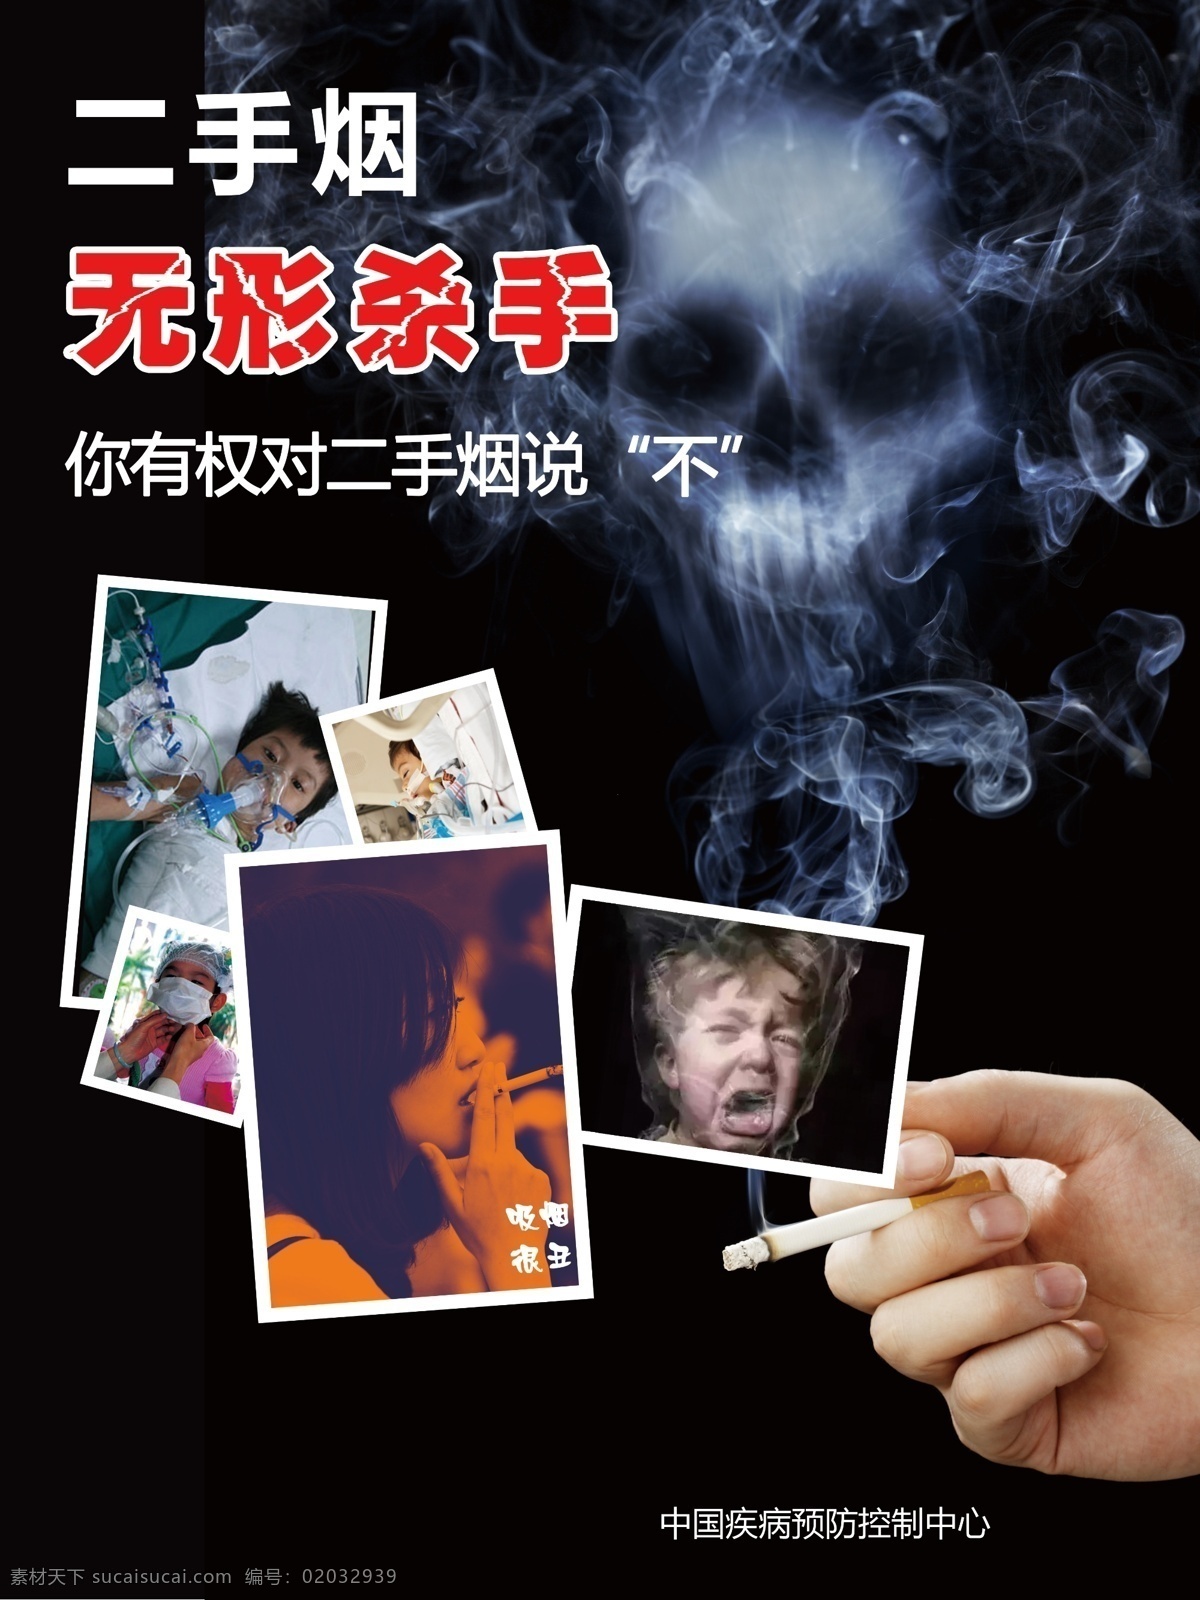 禁烟 禁烟广告 香烟 烟草 骷髅 烟雾 严禁吸烟 二手烟 吸烟的危害 肺炎 肺癌 买烟 卖烟 二手烟的危害